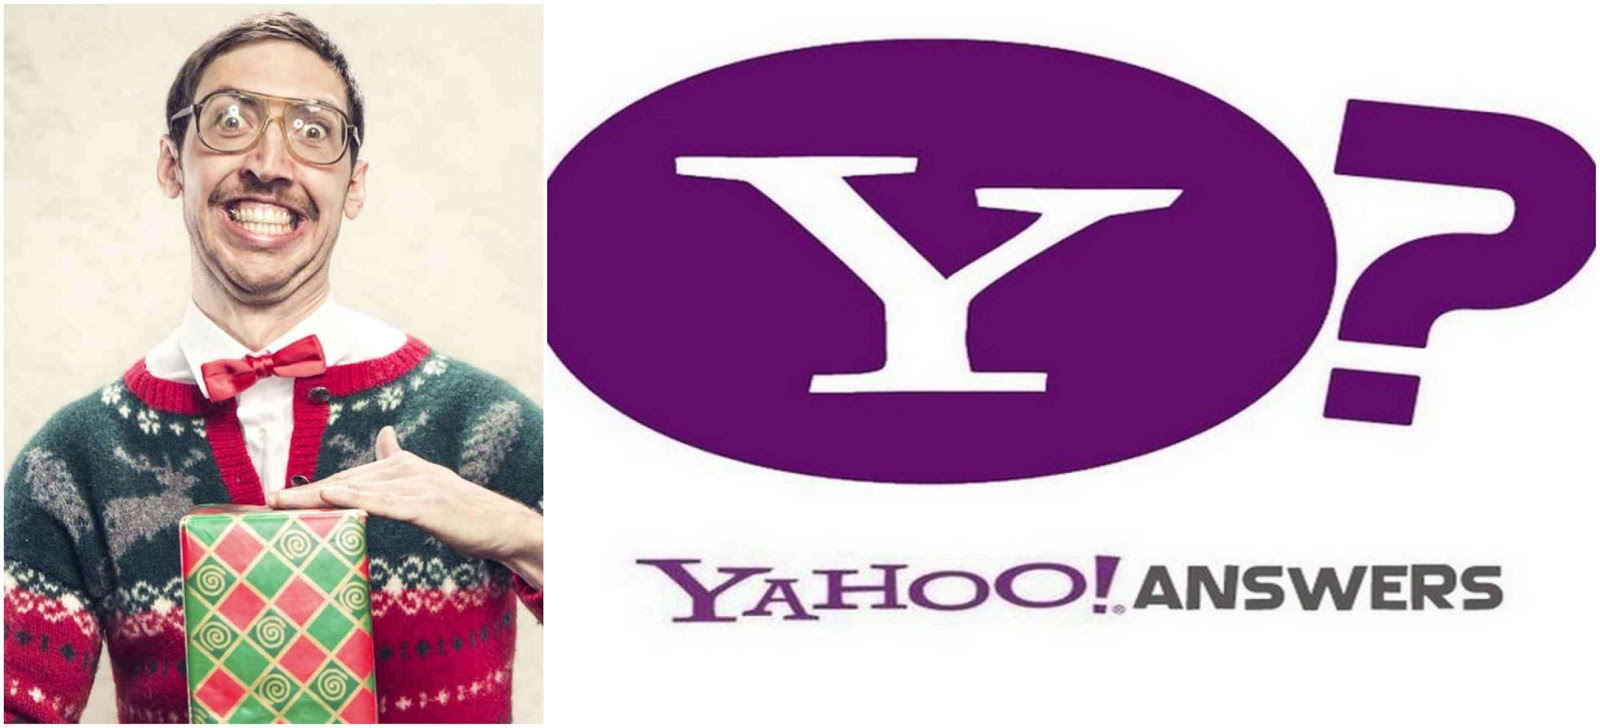 Regali Di Natale Yahoo.L Internetturbino Cosi Parlo Yahoo Answers Regali Di Natale Brutti